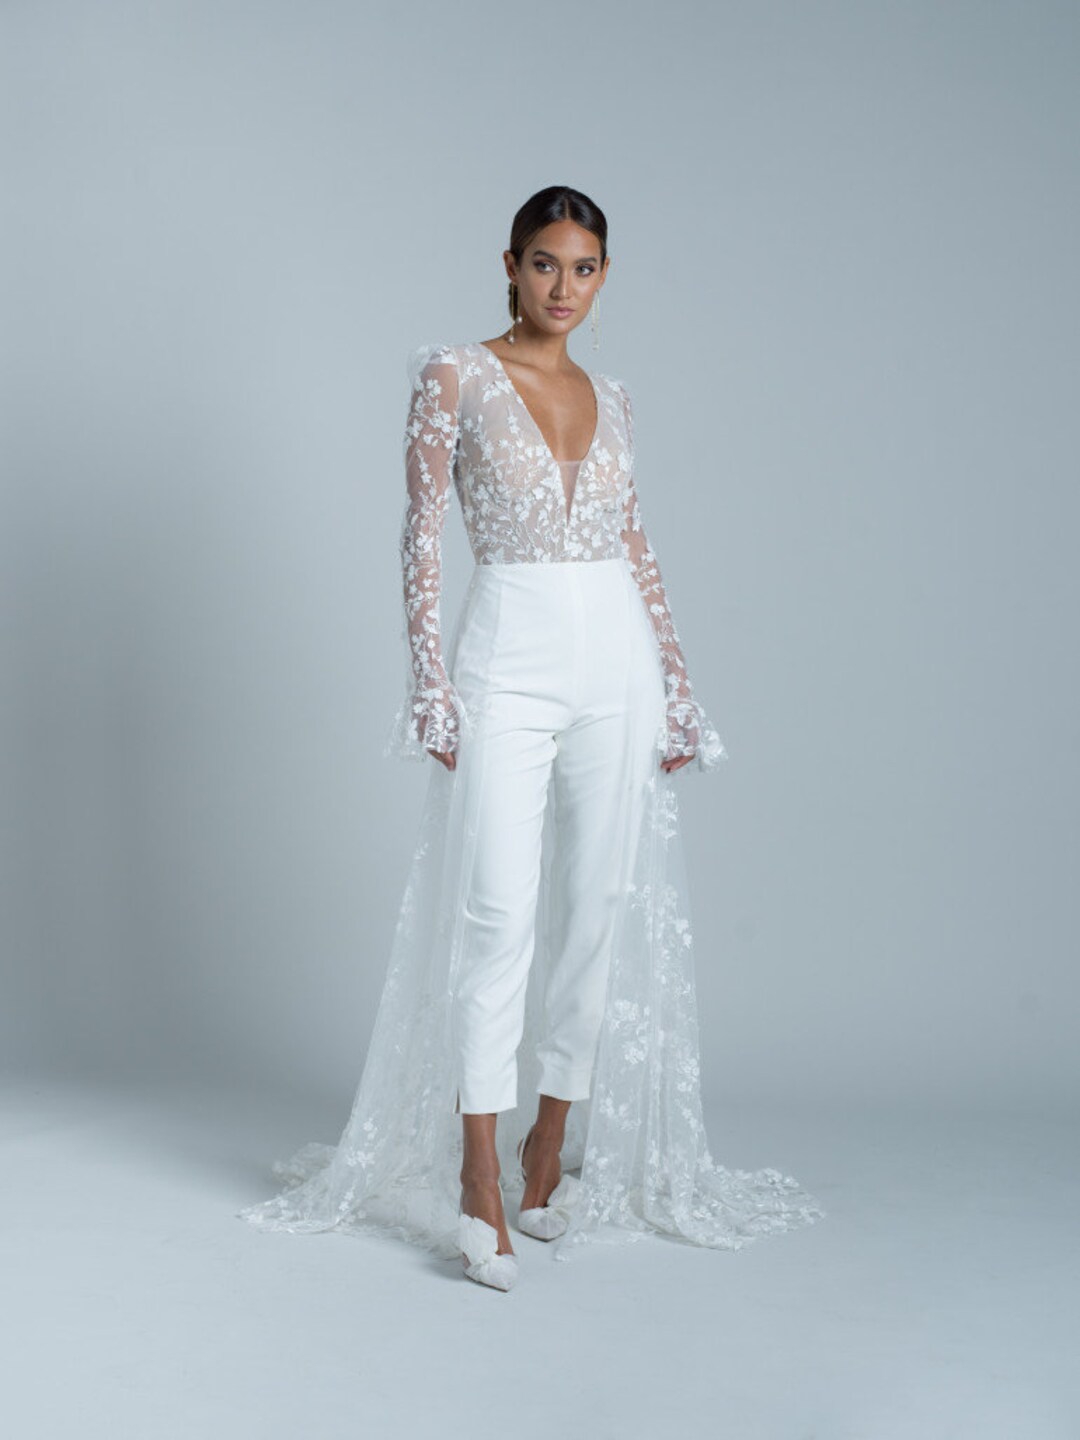 Elegant Lace Jumpsuit, Bridal Jumpsuit, Bridals Wedding Dress Attire ...